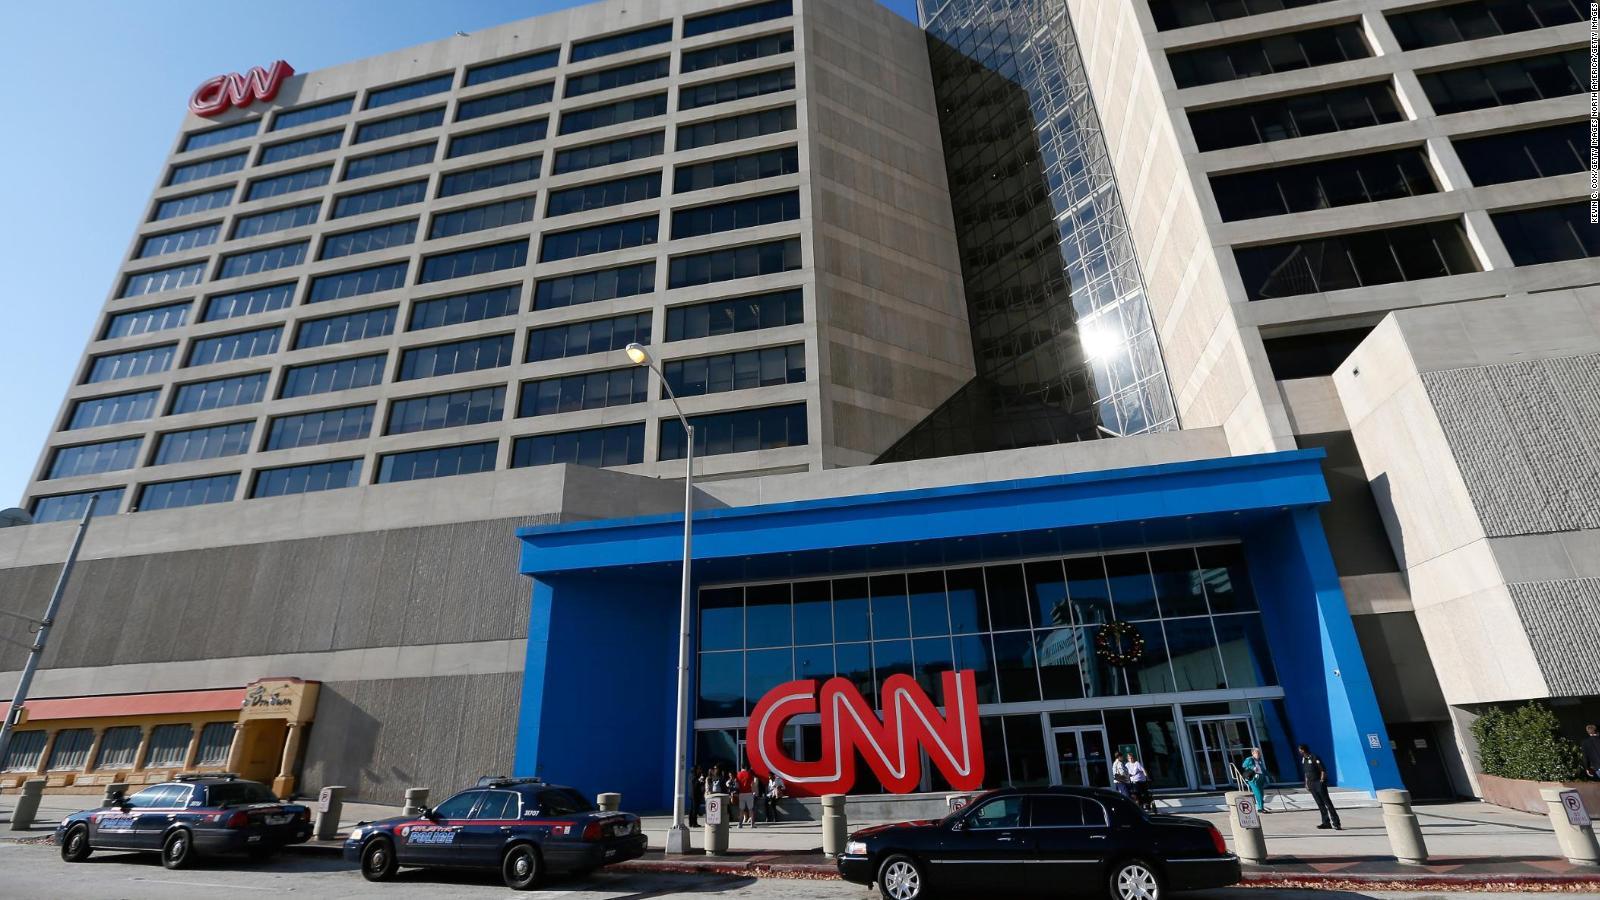 Otro paquete sospechoso dirigido a CNN fue interceptado por las autoridades estadounidenses